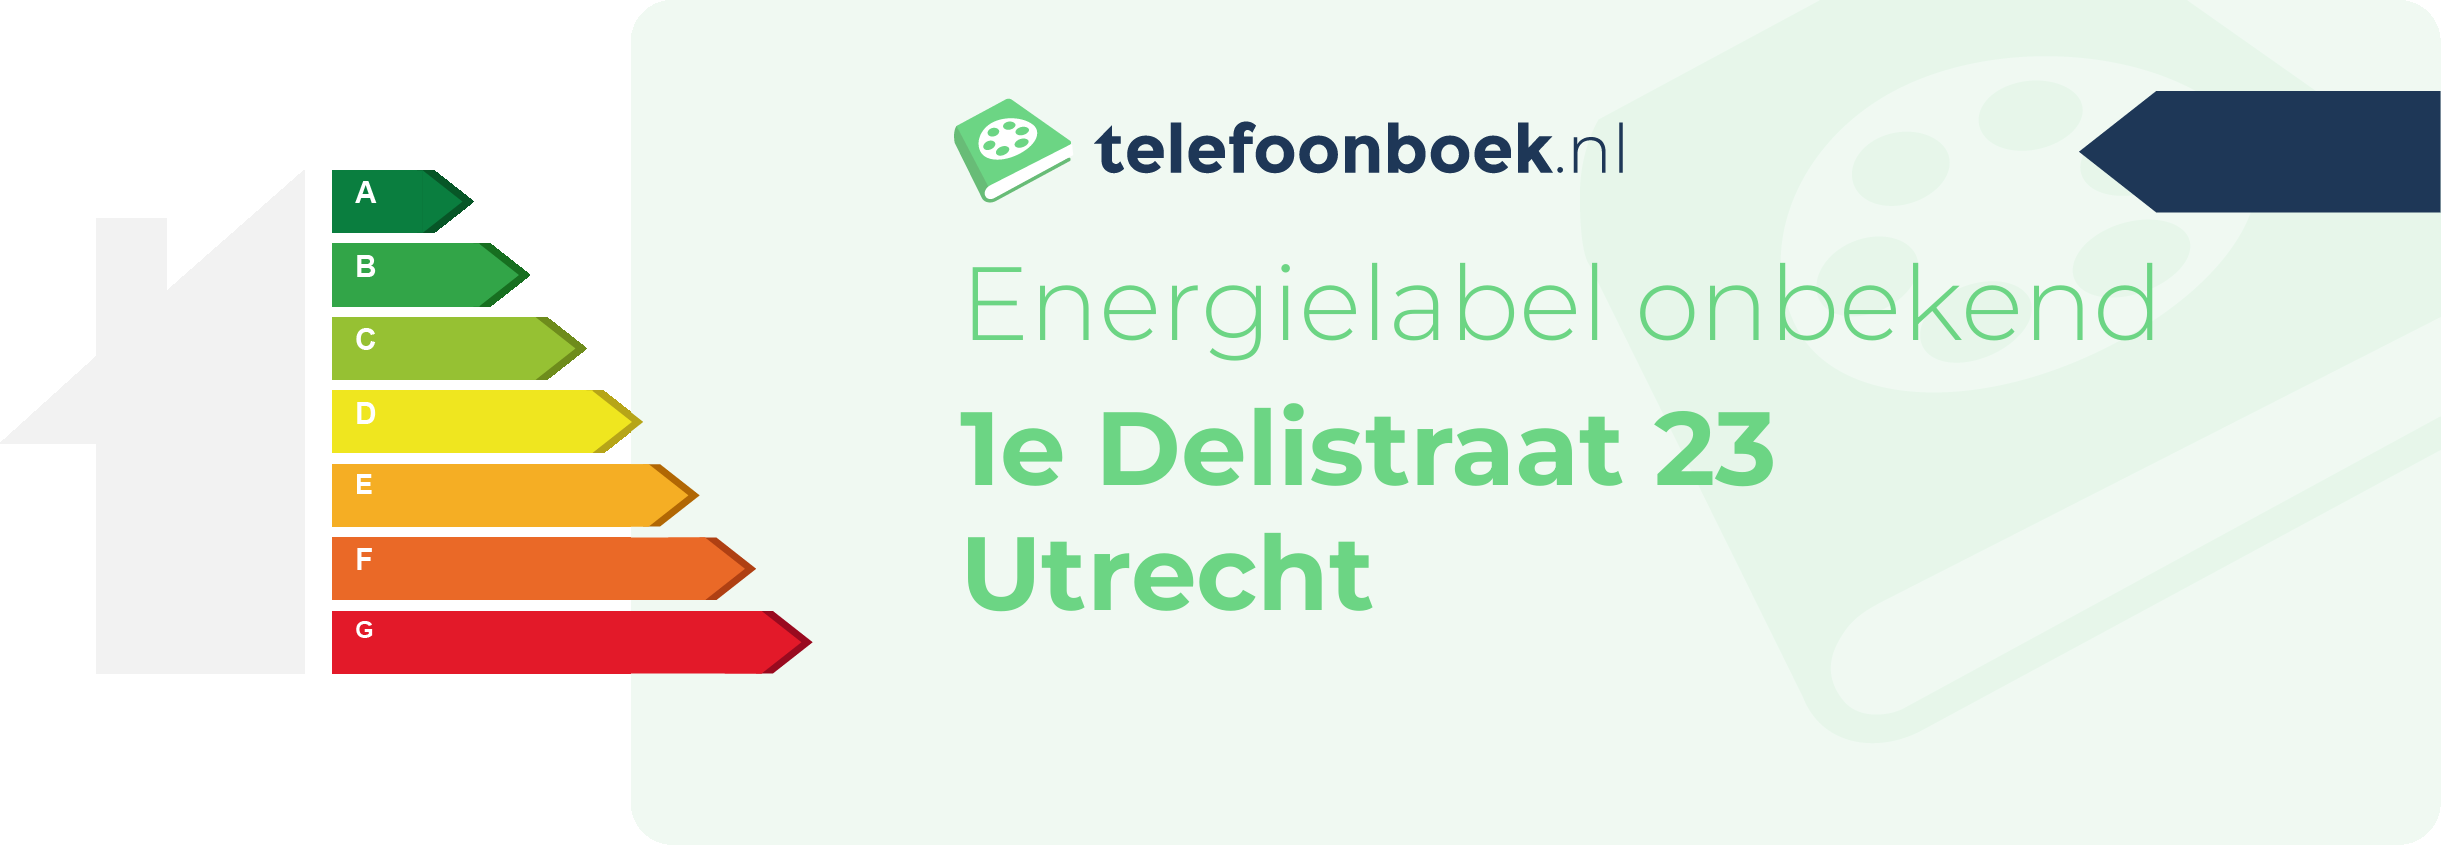 Energielabel 1e Delistraat 23 Utrecht